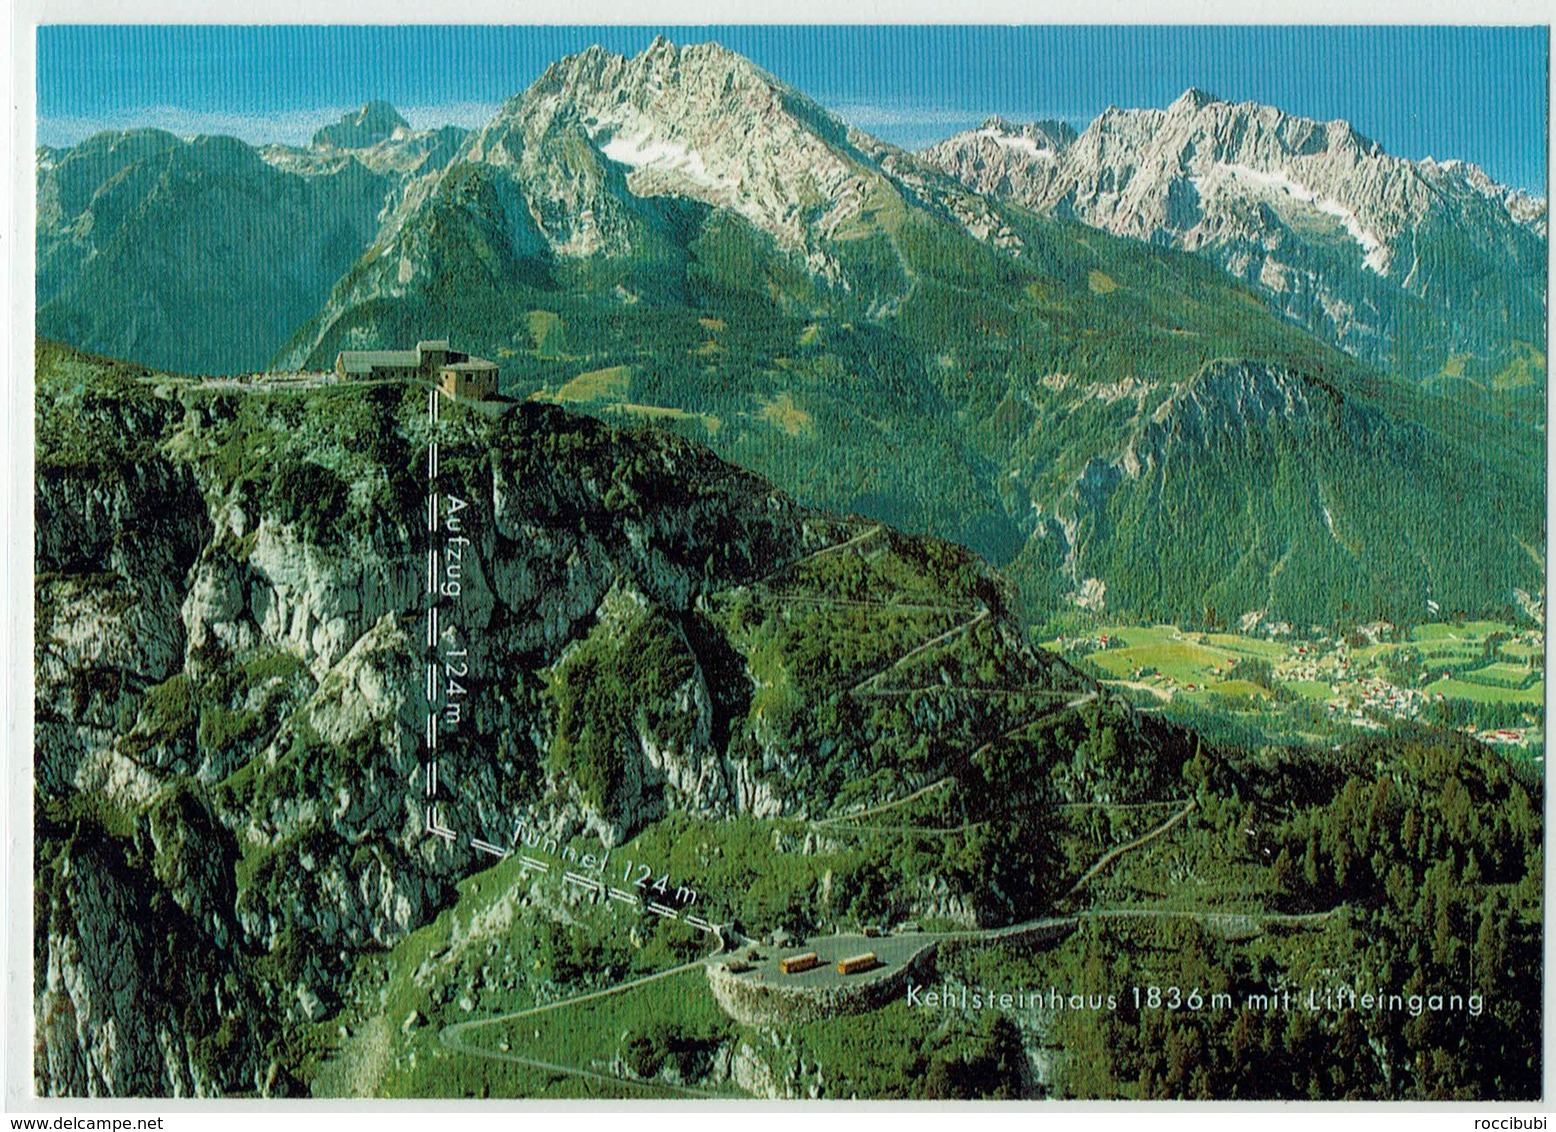 Deutschland, Berchtesgaden, Kehlsteinhaus - Berchtesgaden